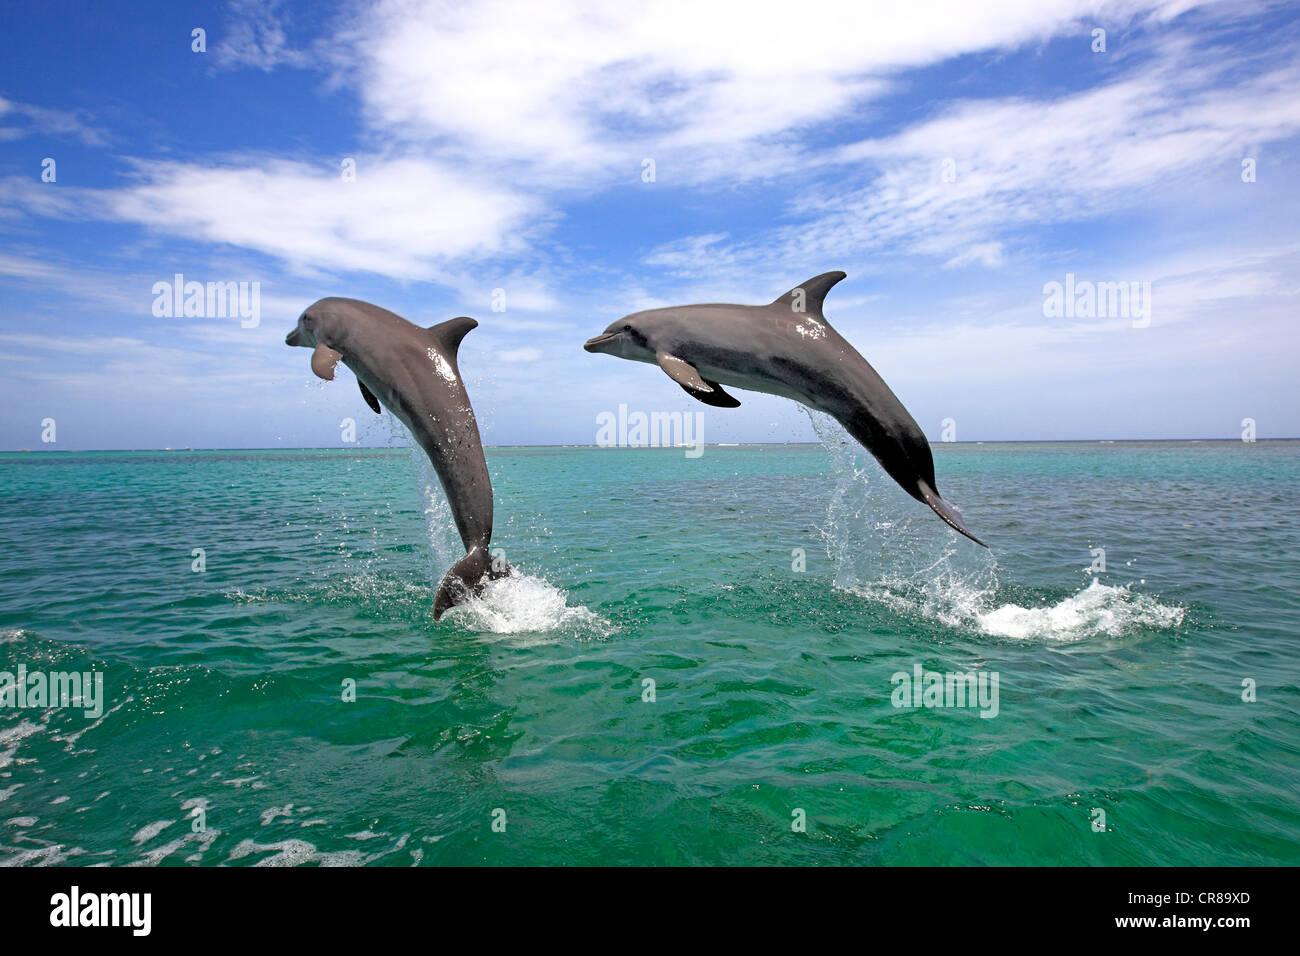 Dos delfines nariz de botella (Tursiops truncatus), adulto, saltando fuera del mar, Roatán, Honduras, El Caribe, América Central Foto de stock